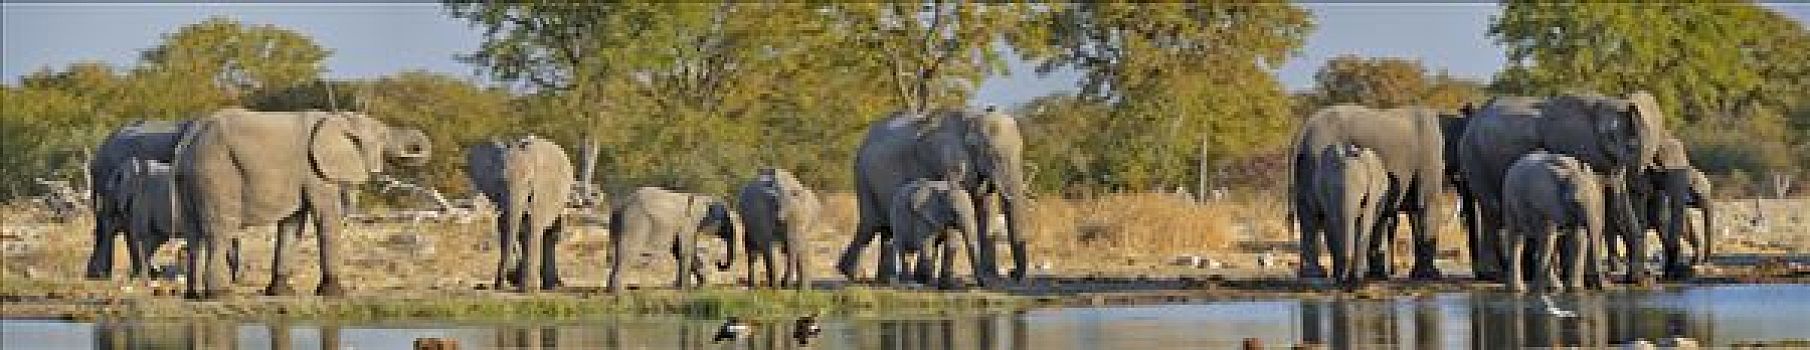 牧群,非洲,灌木,大象,非洲象,水坑,埃托沙国家公园,纳米比亚